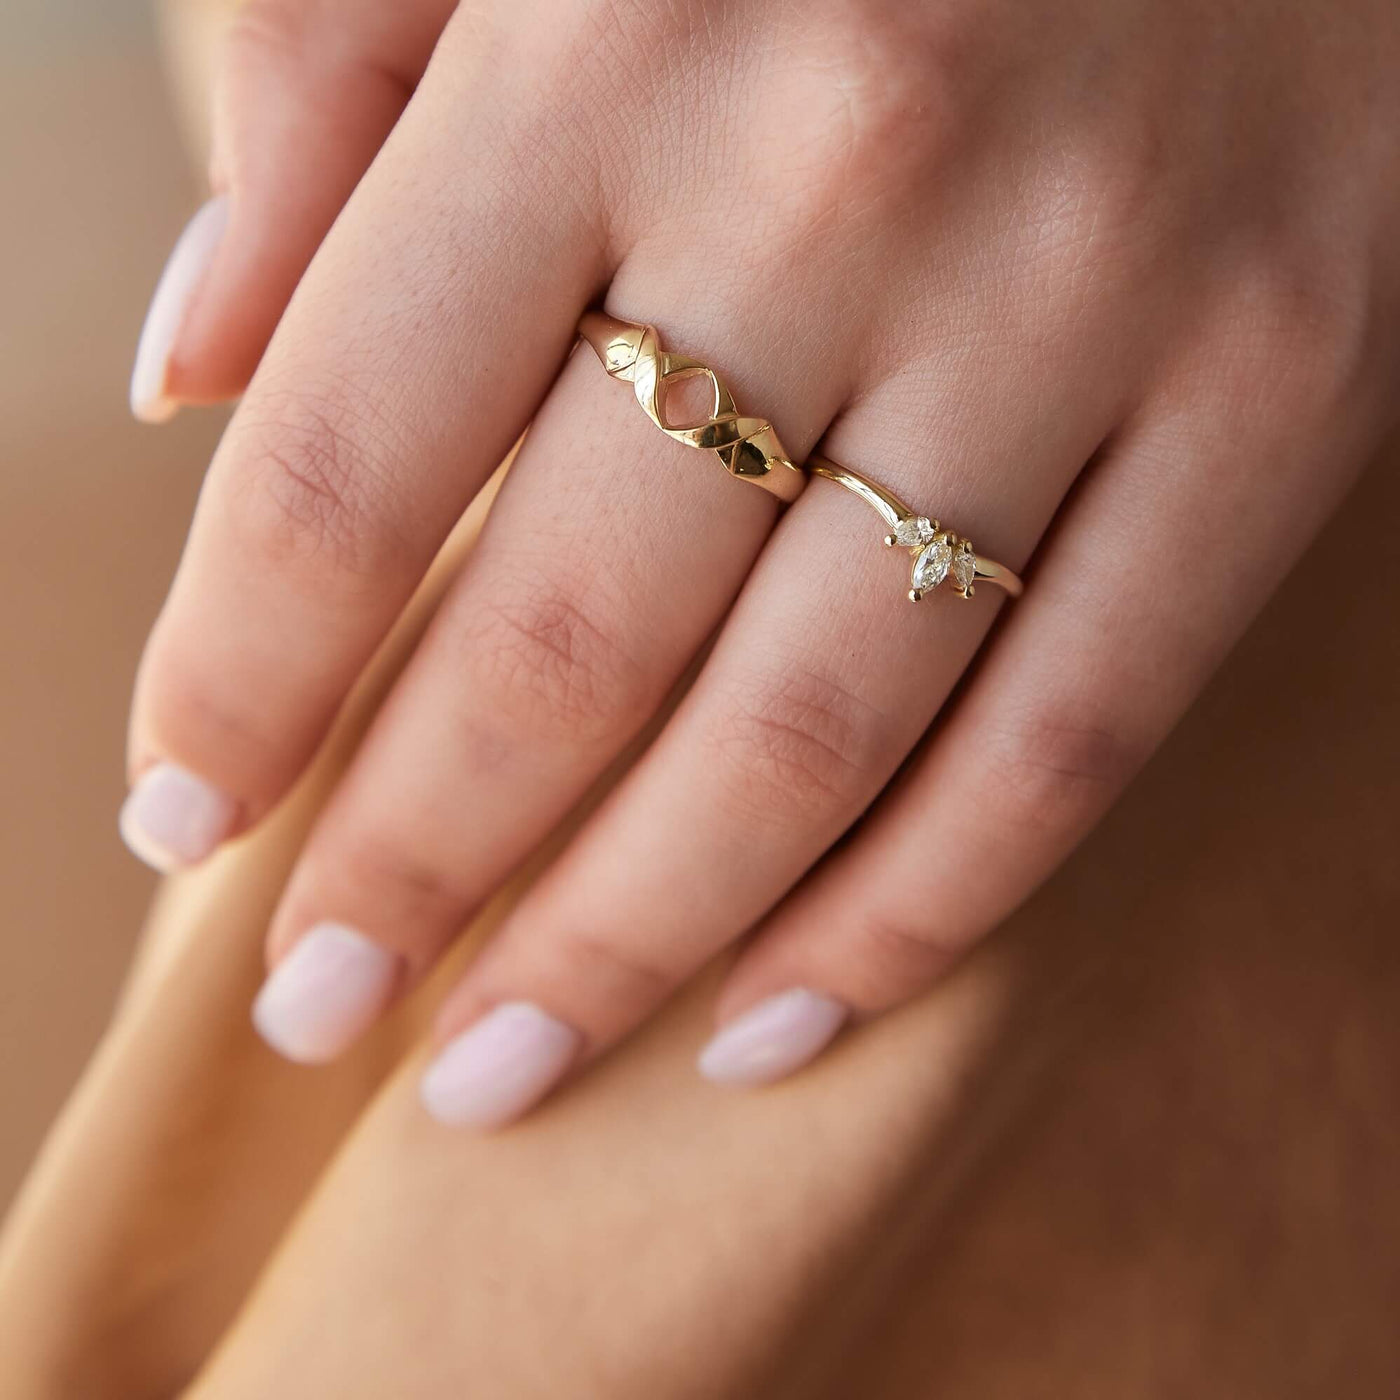 Louise Ring 14K Gold White Diamonds Rings 